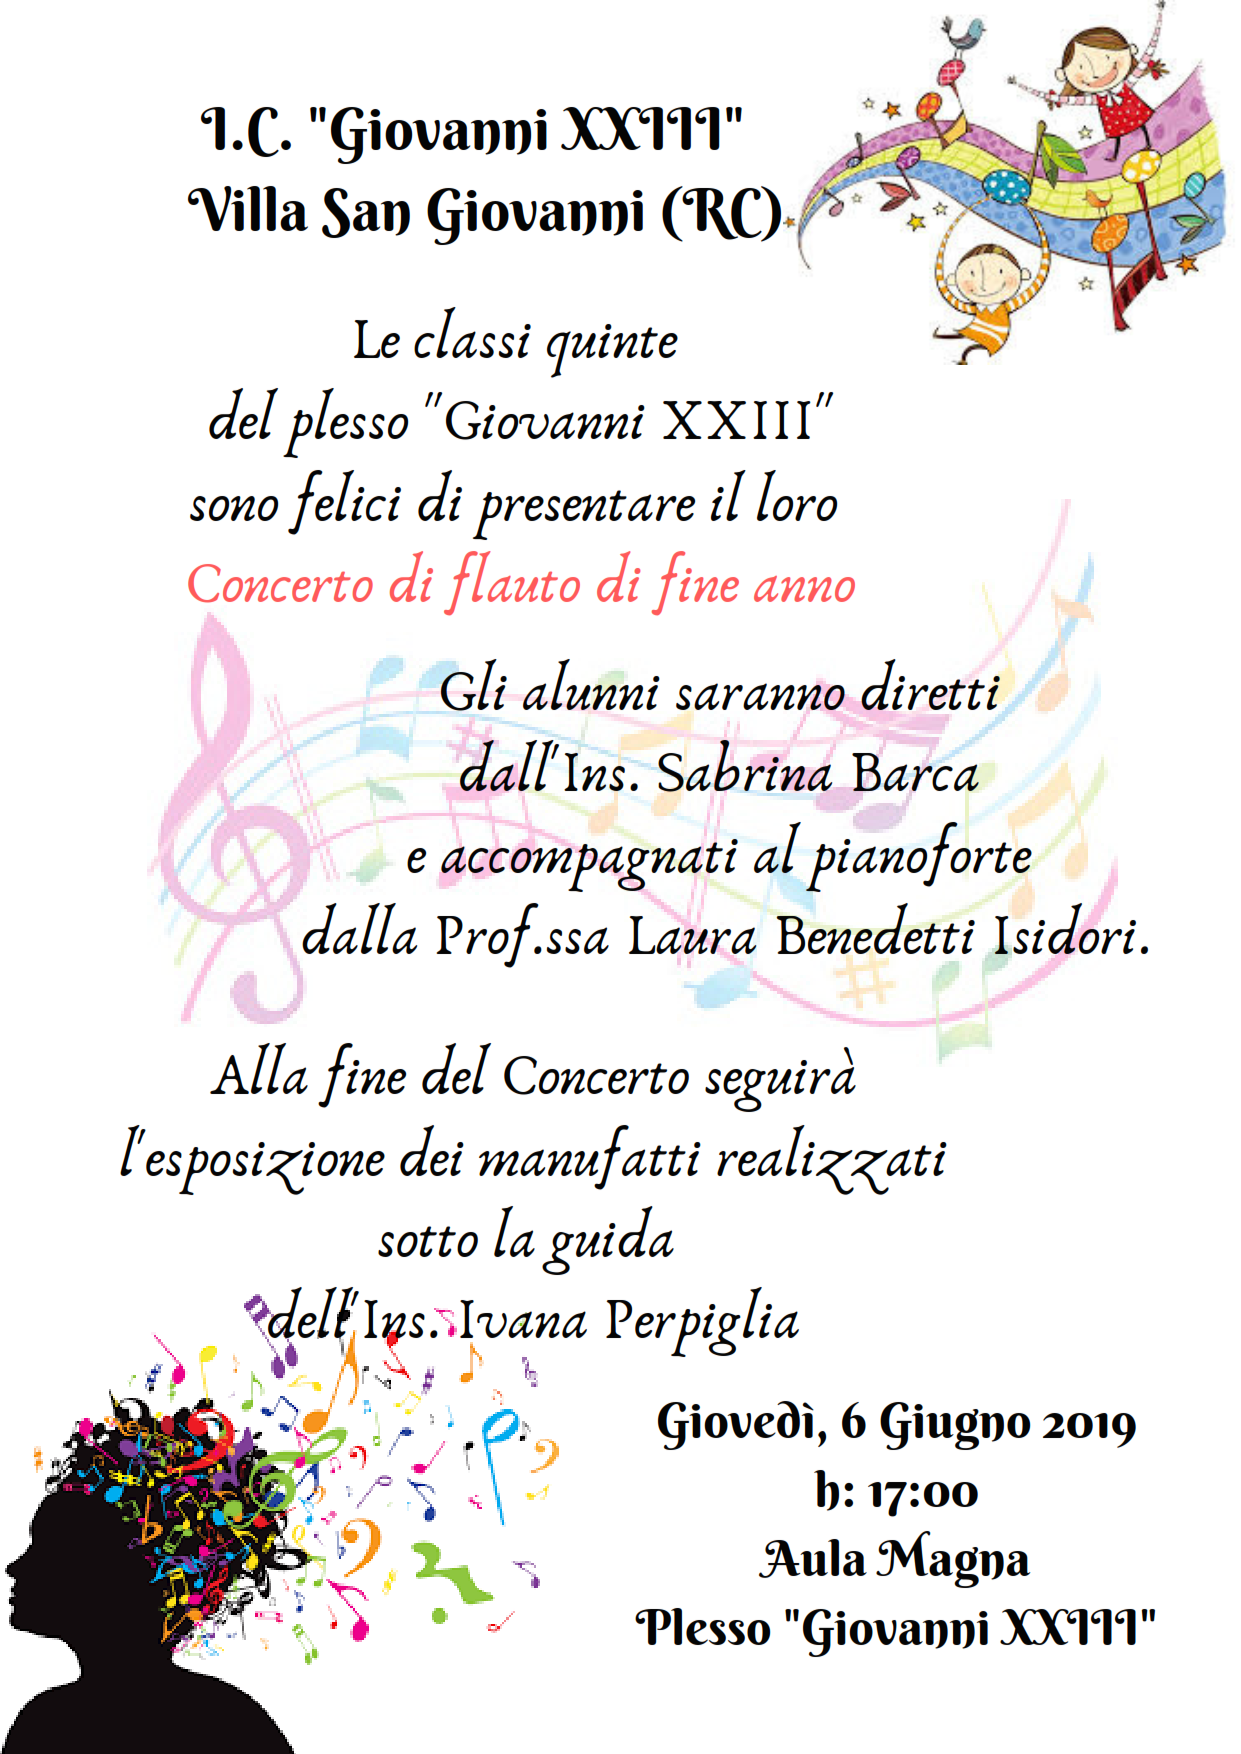 2019 06 06 Concerto di flauto di fine anno